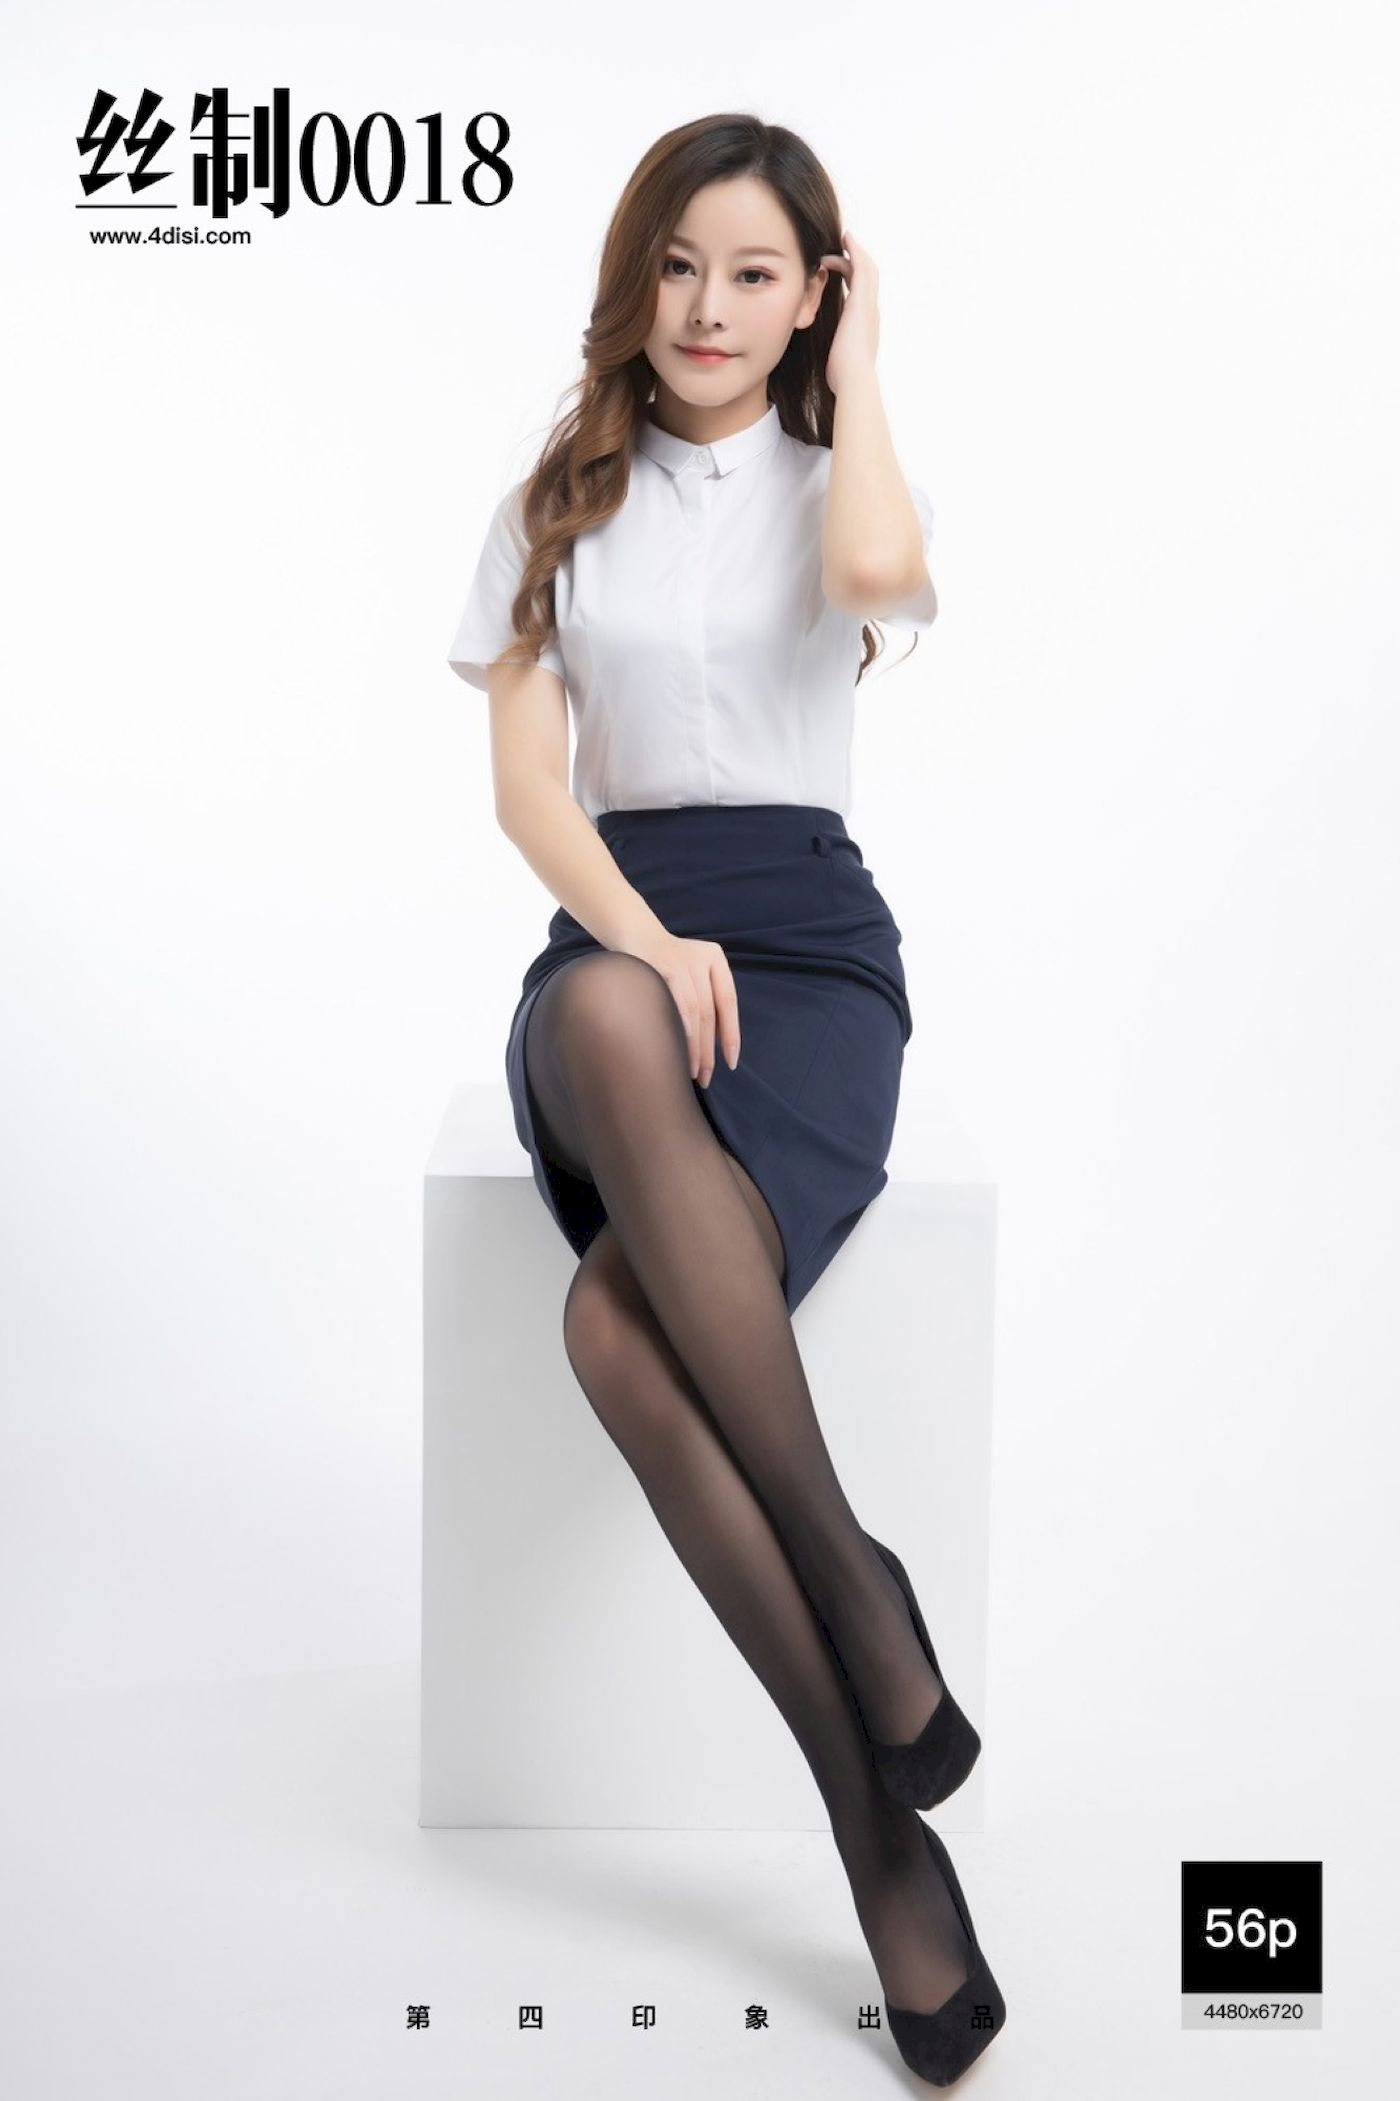 DISI丝制腿模白色职场OL服饰搭配黑丝袜气质写真